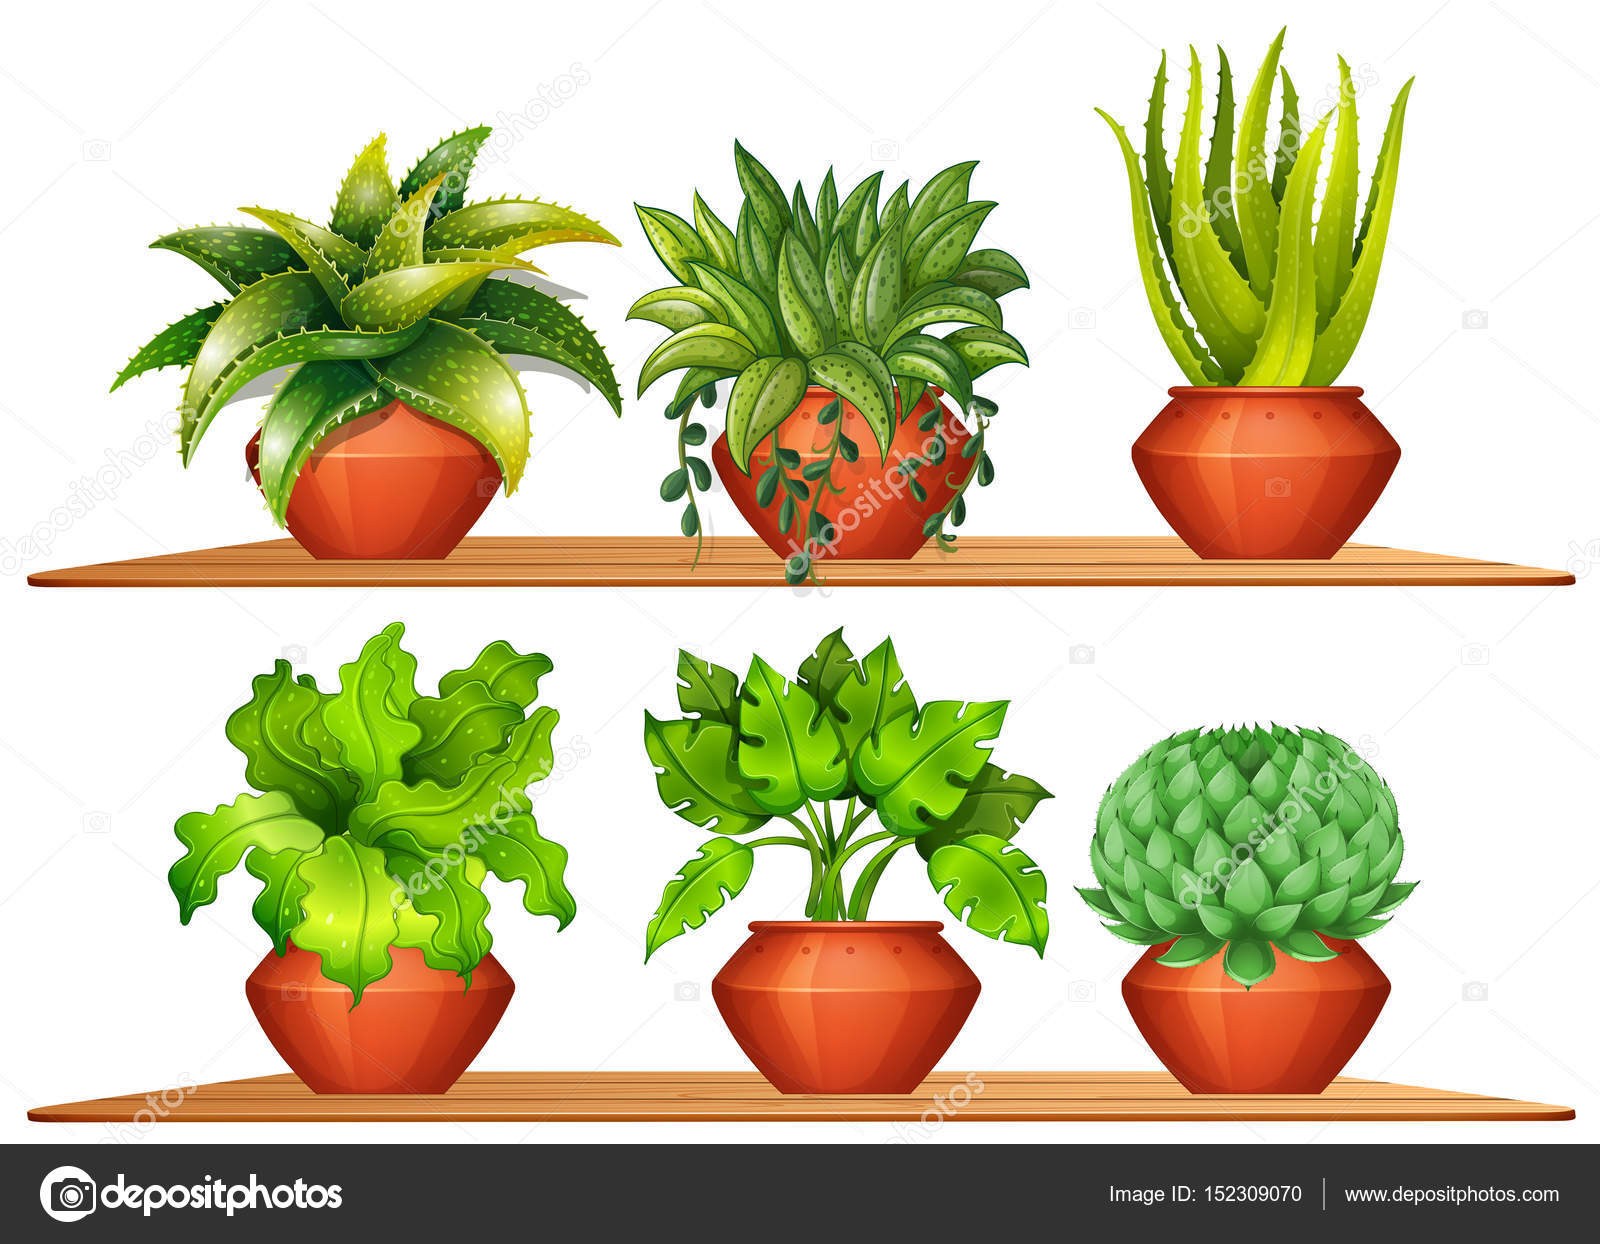 many types of plants stockvektoren, lizenzfreie illustrationen